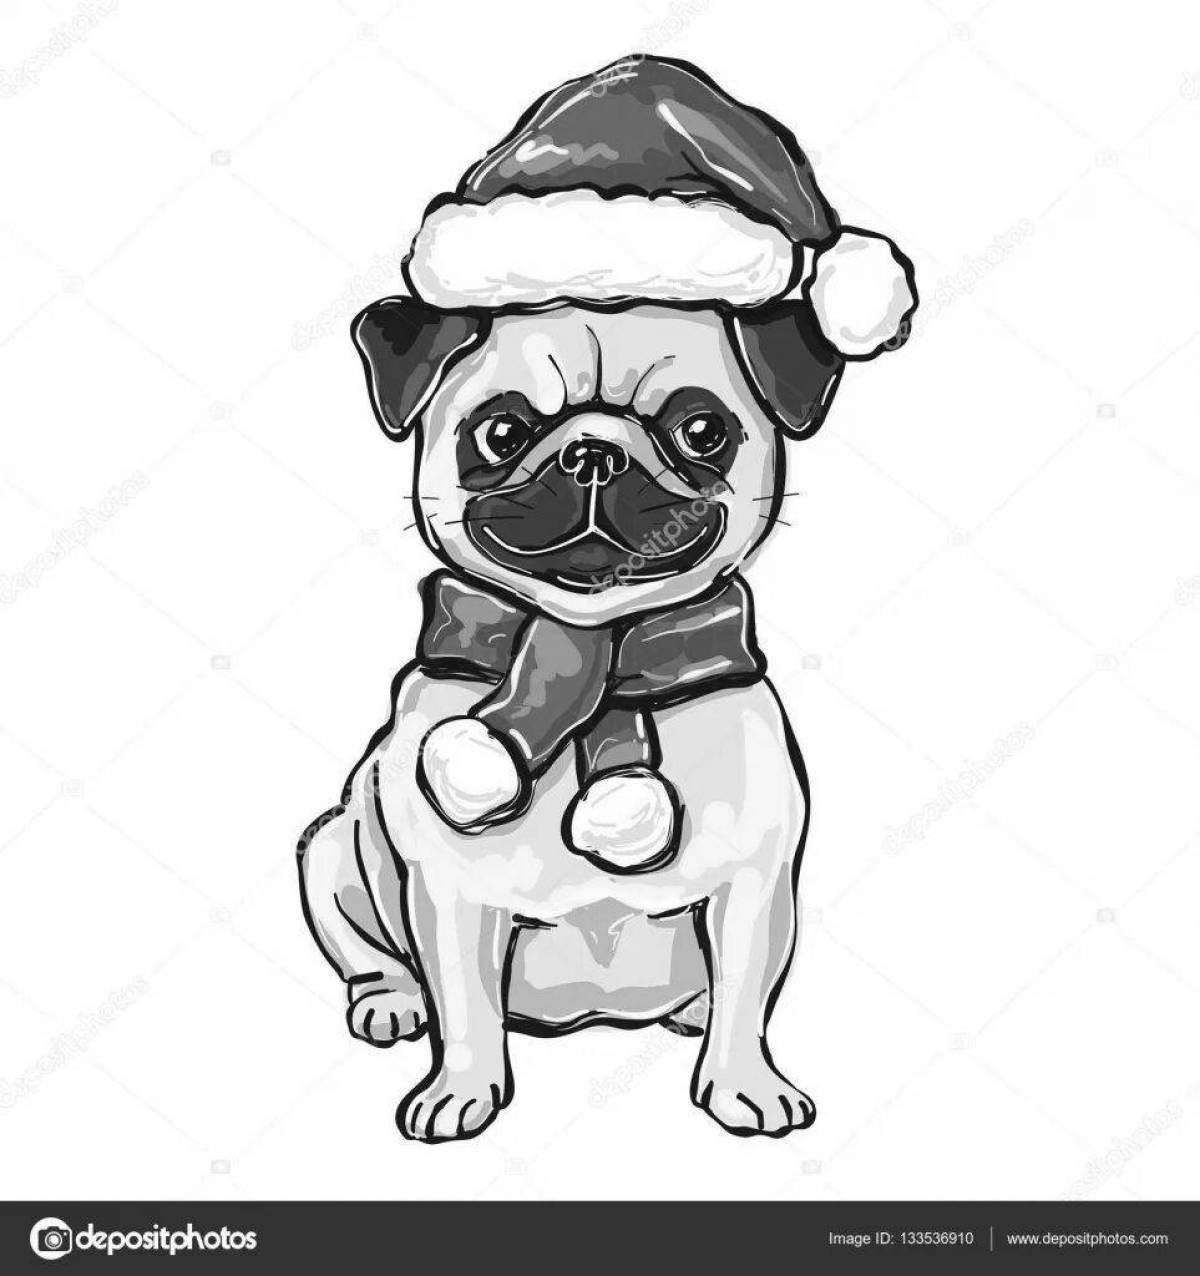 Christmas coloring page adorable pug